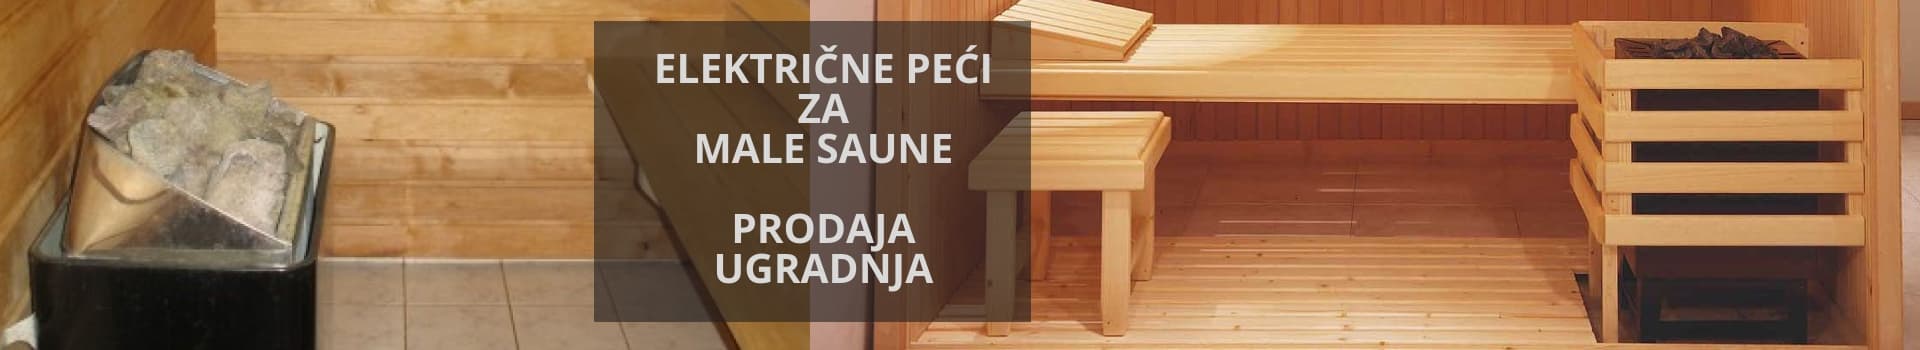 Električne peći za male saune zapremine do 8 m³